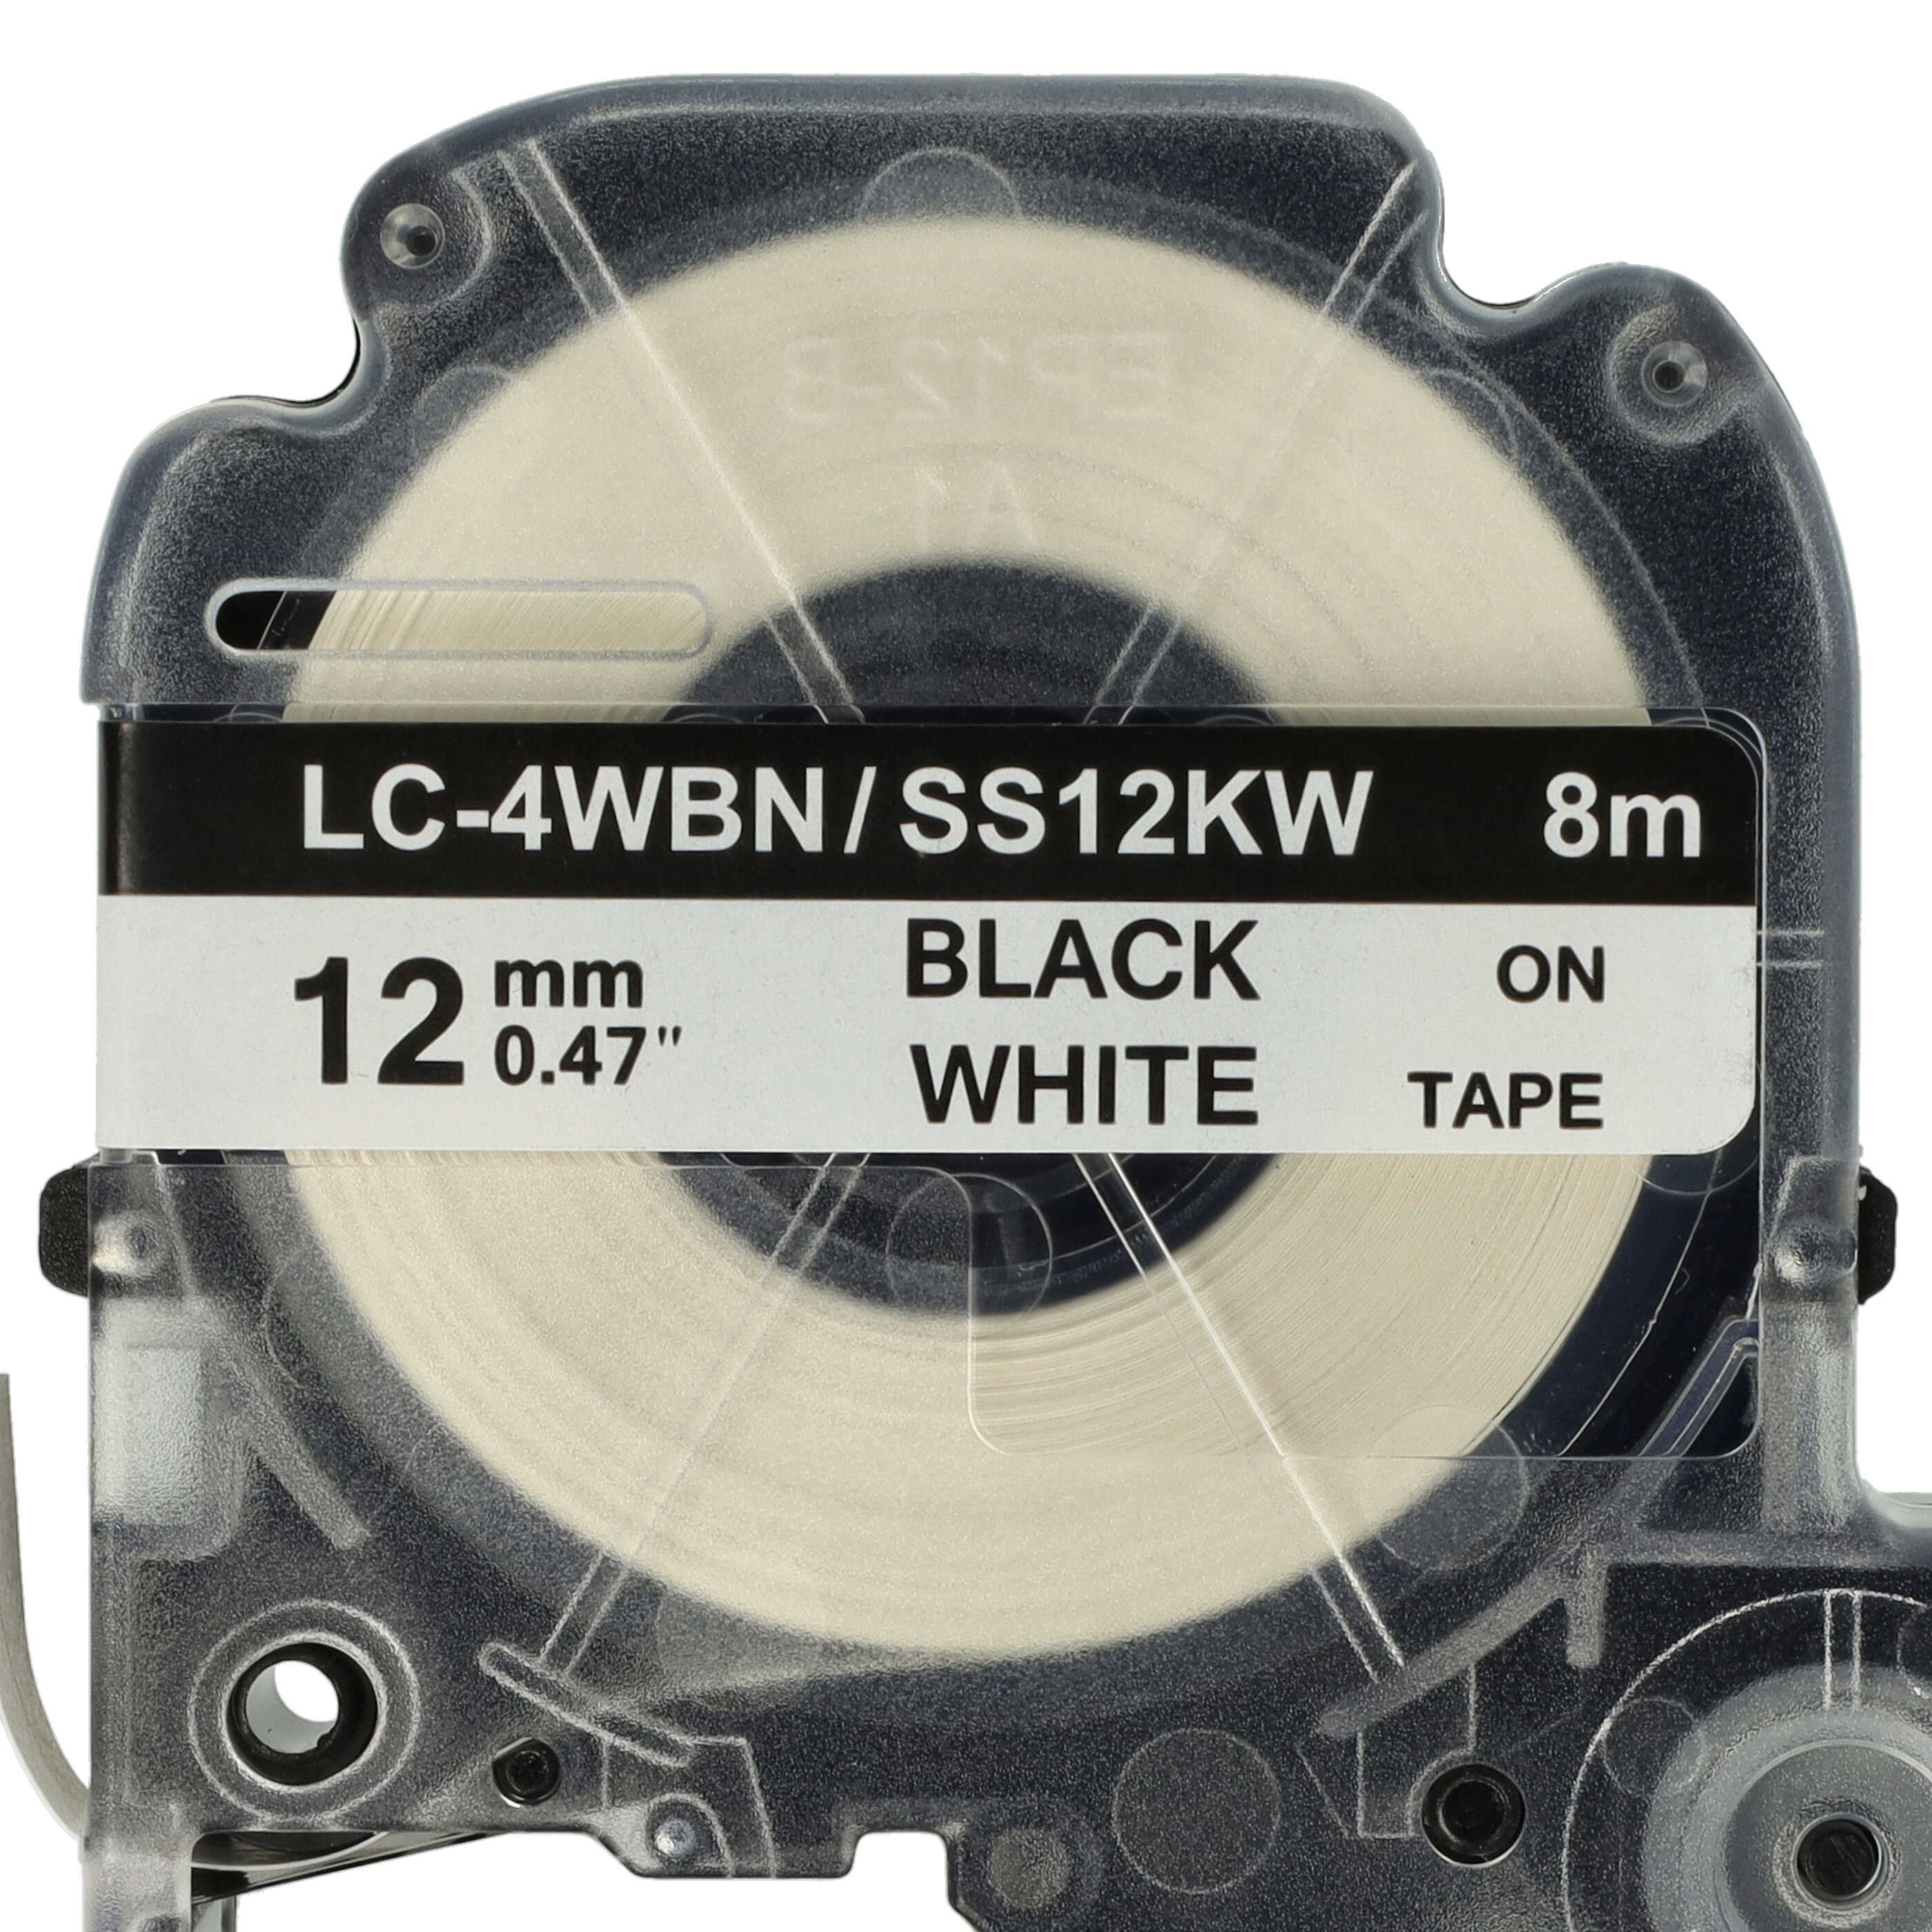 10x Taśma do etykiet zam. Epson SS12KW, LC-4WBN - 12mm, napis czarny / taśma biała